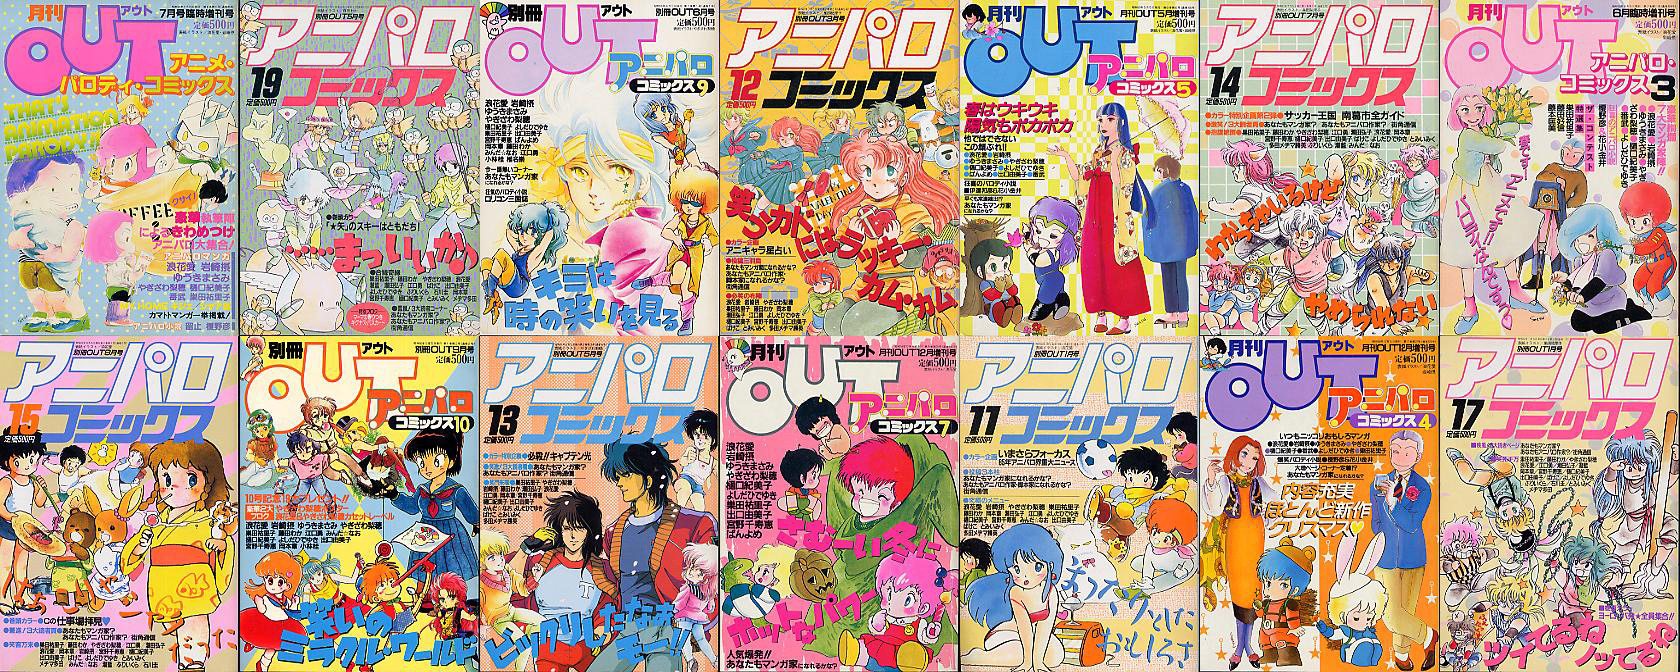 chibi magazines from 1980s